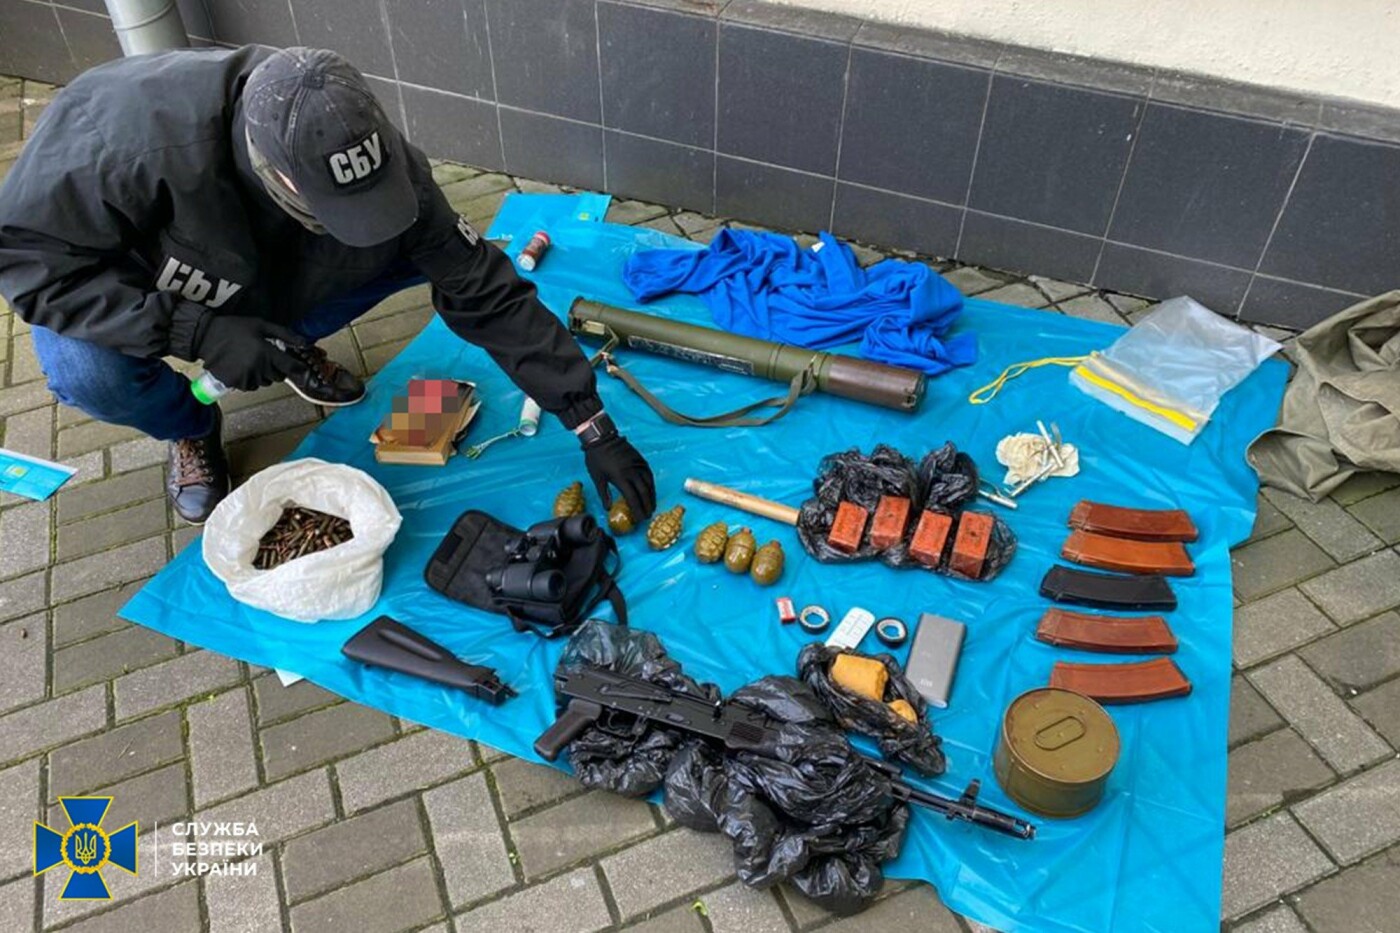 Тротиловые шашки, гранаты и патроны: в центре Киева нашли склад с боеприпасами.